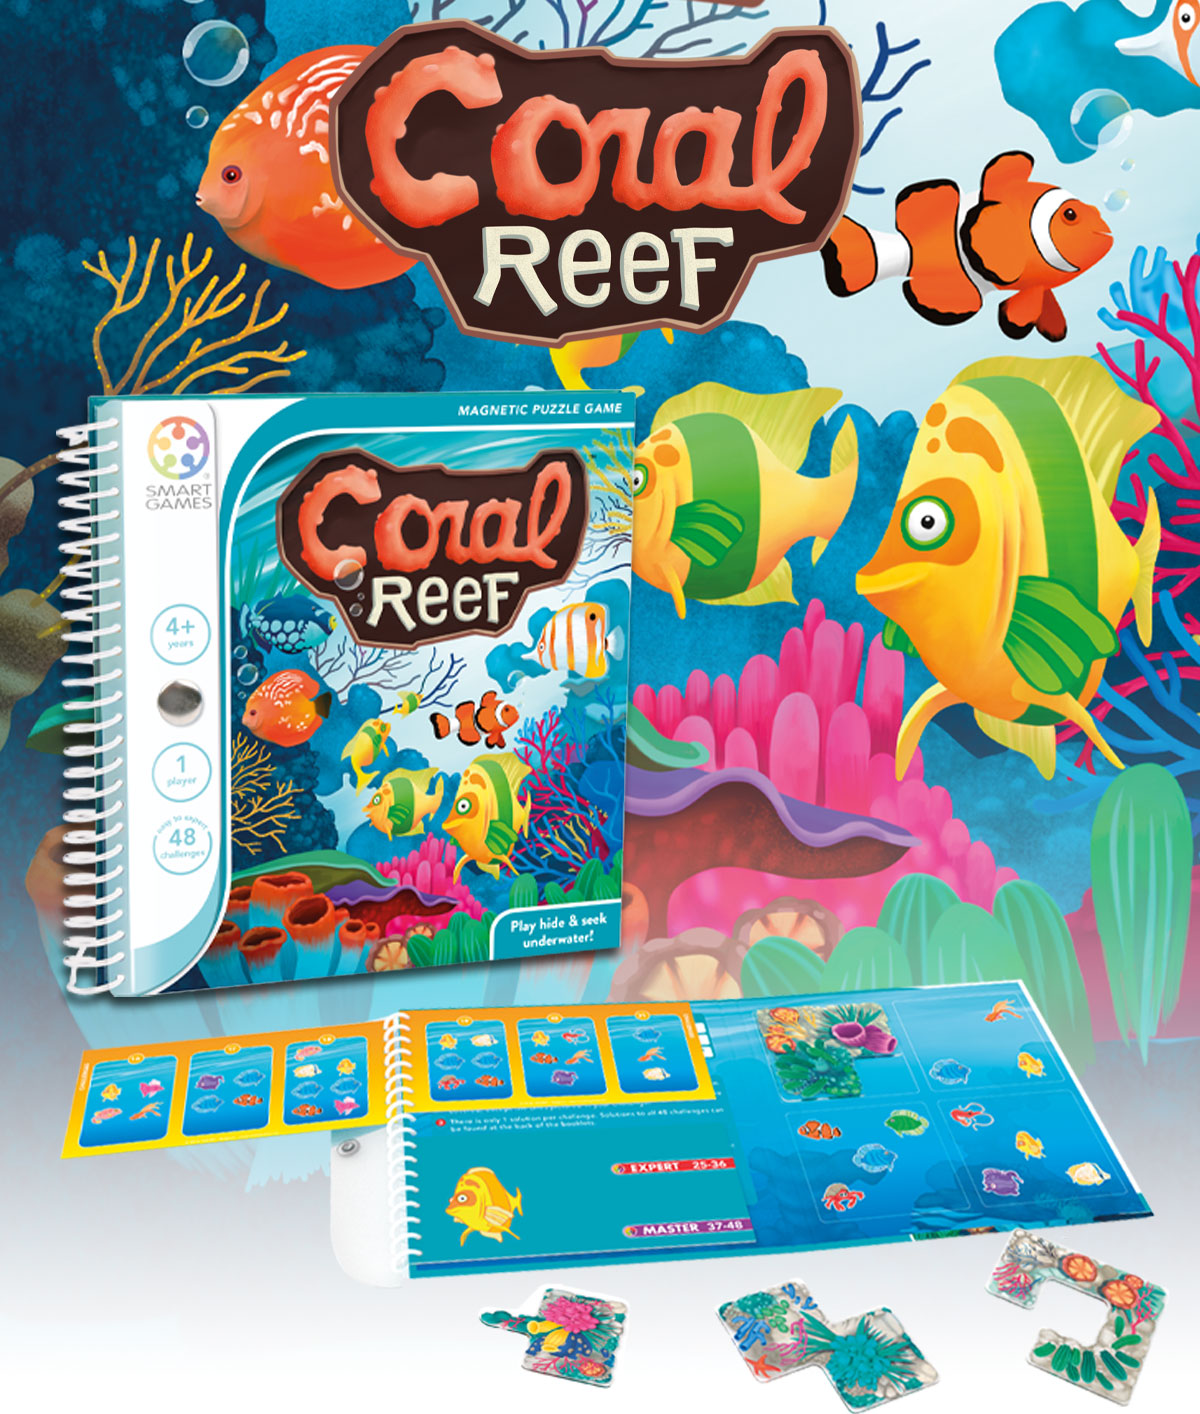 Multicolor Juegos de Viajes Lúdilo SGT221 educativos smart games Coral Reef Infantiles smartgames puzle magnético Puzzle 4 años Rompecabezas 